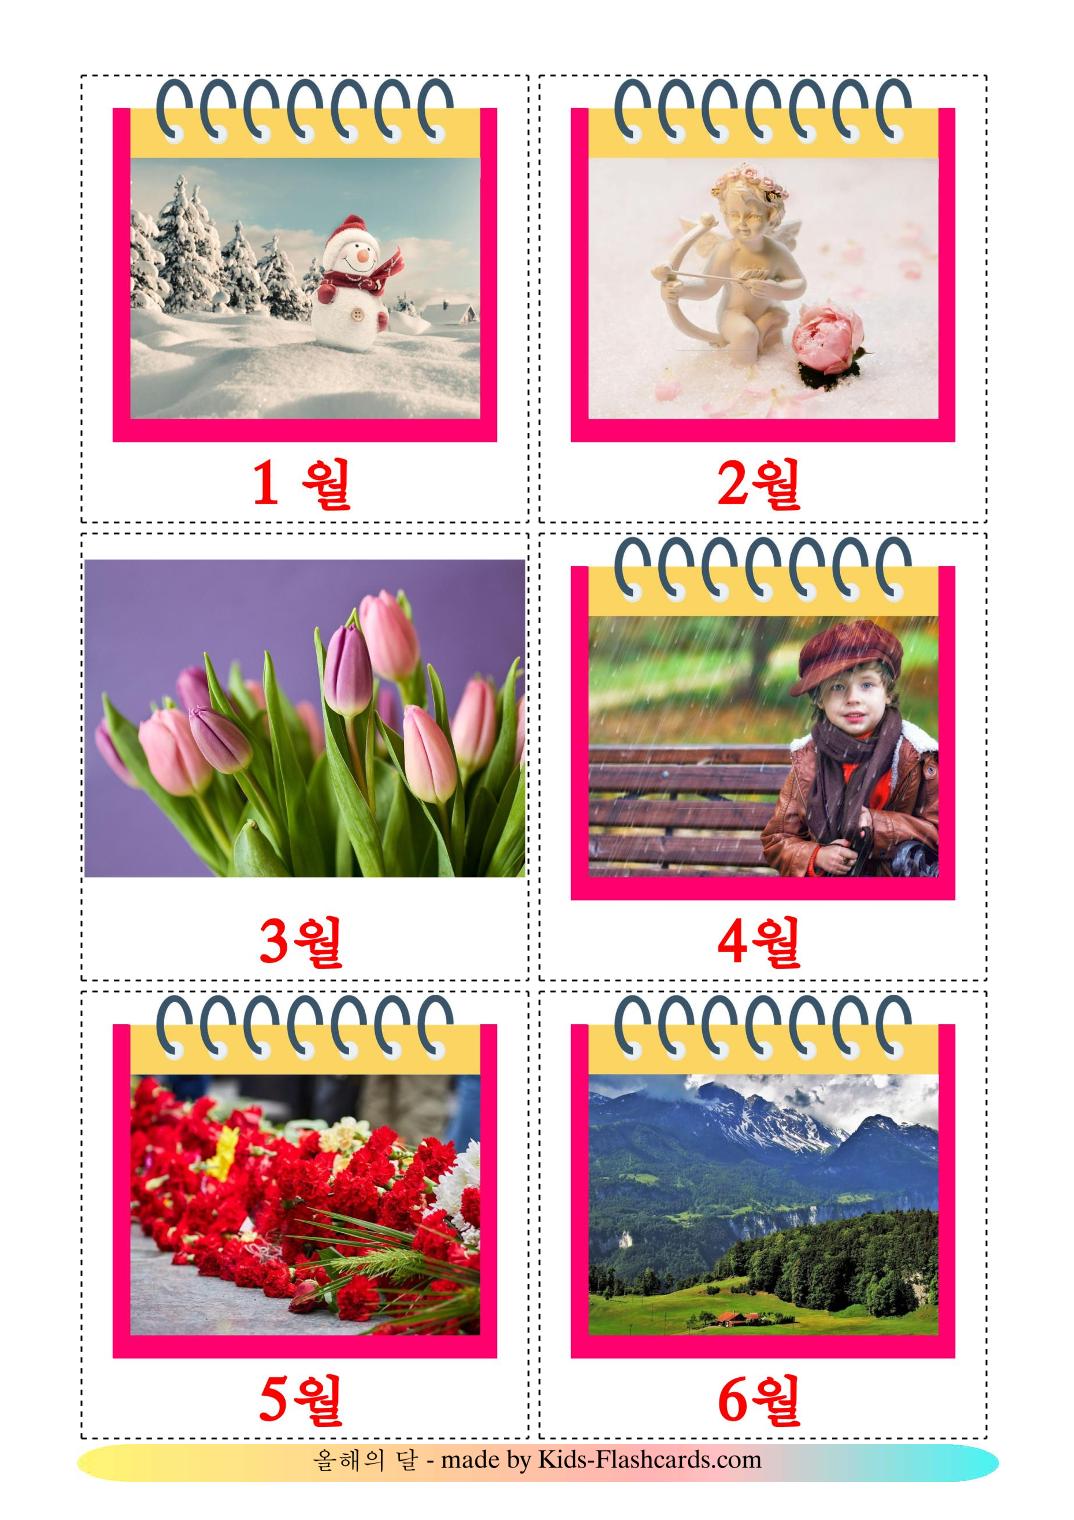 Meses do ano - 12 Flashcards coreanoes gratuitos para impressão